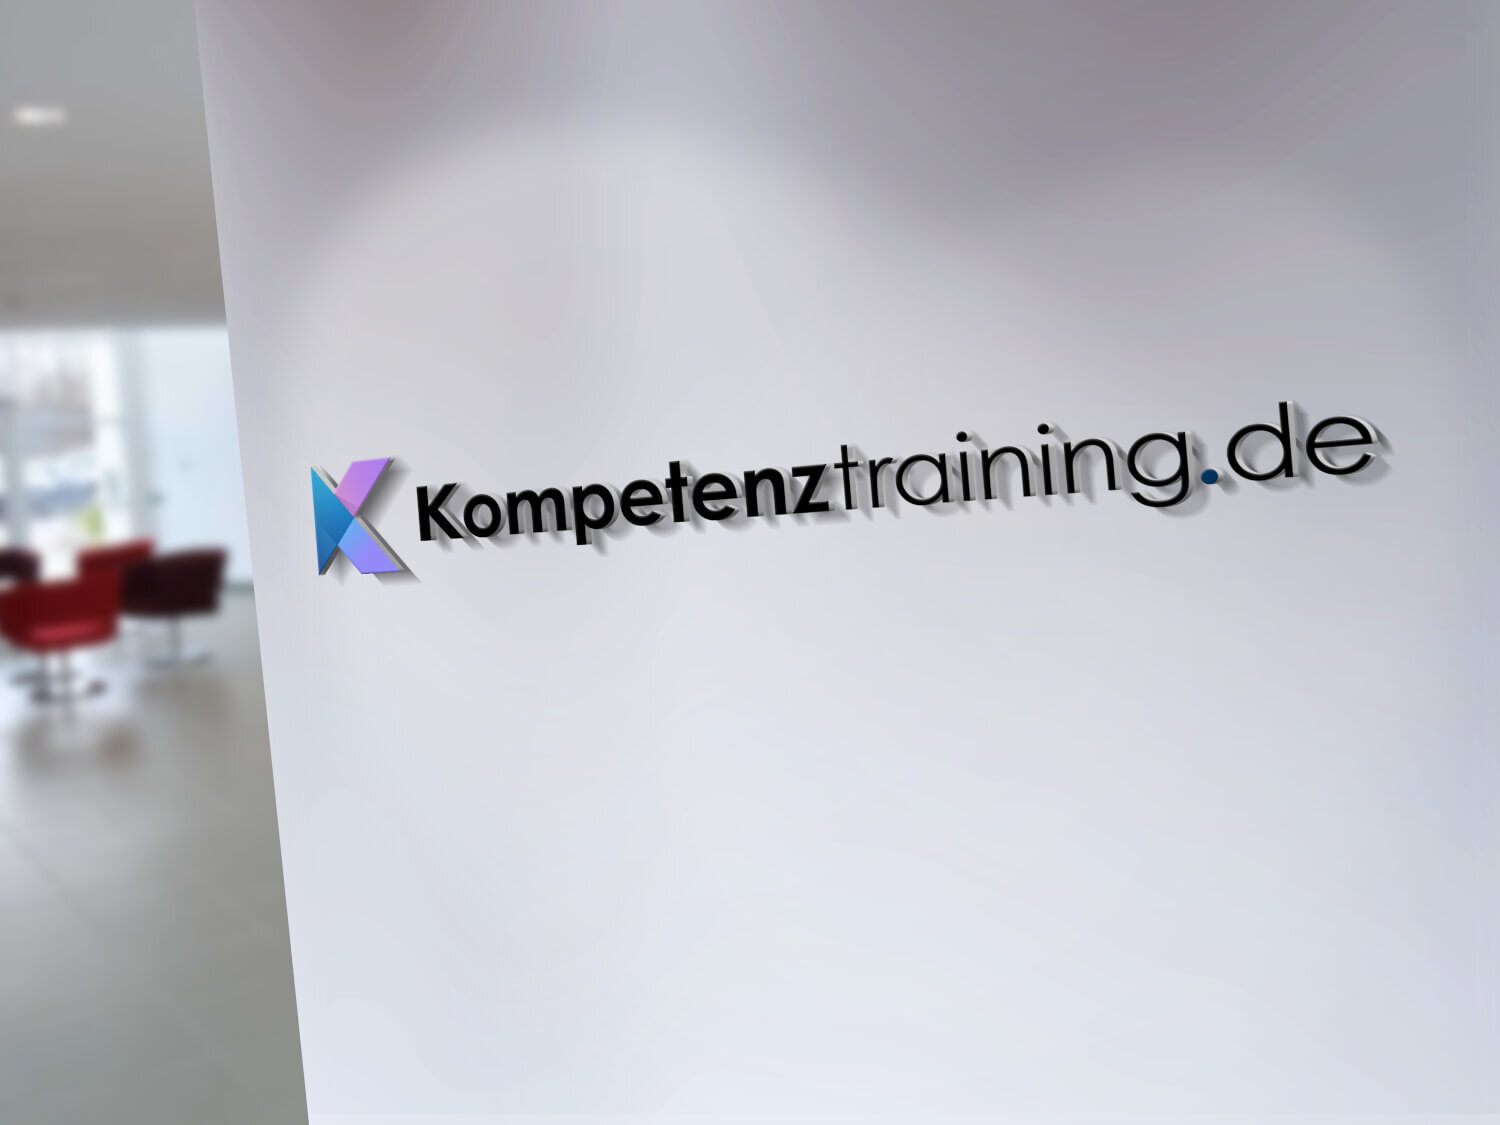 Kompetenztraining.de Logo Seminarraum